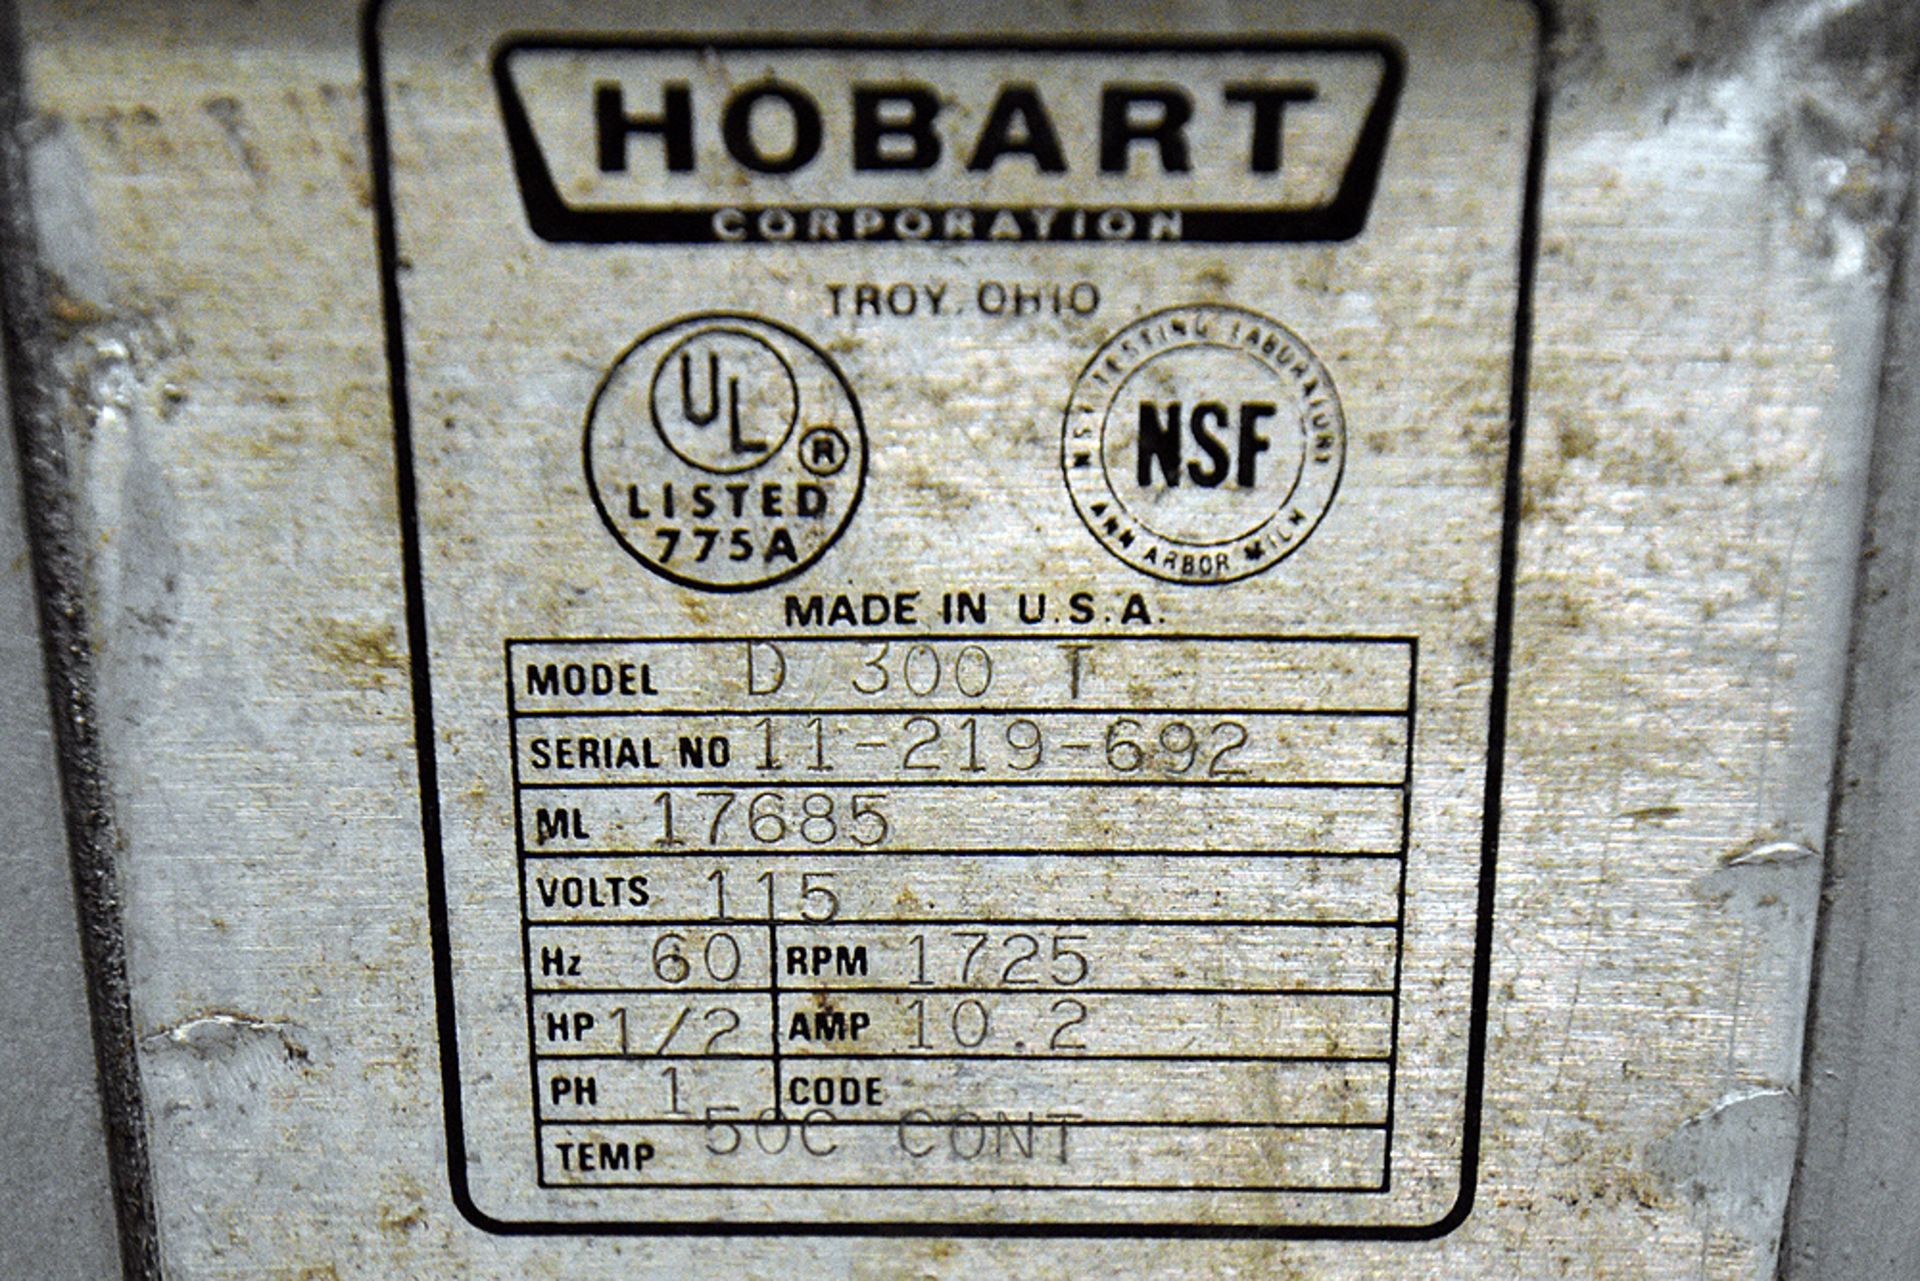 Hobart Model D300T Mixer w/Attachments - Image 5 of 6